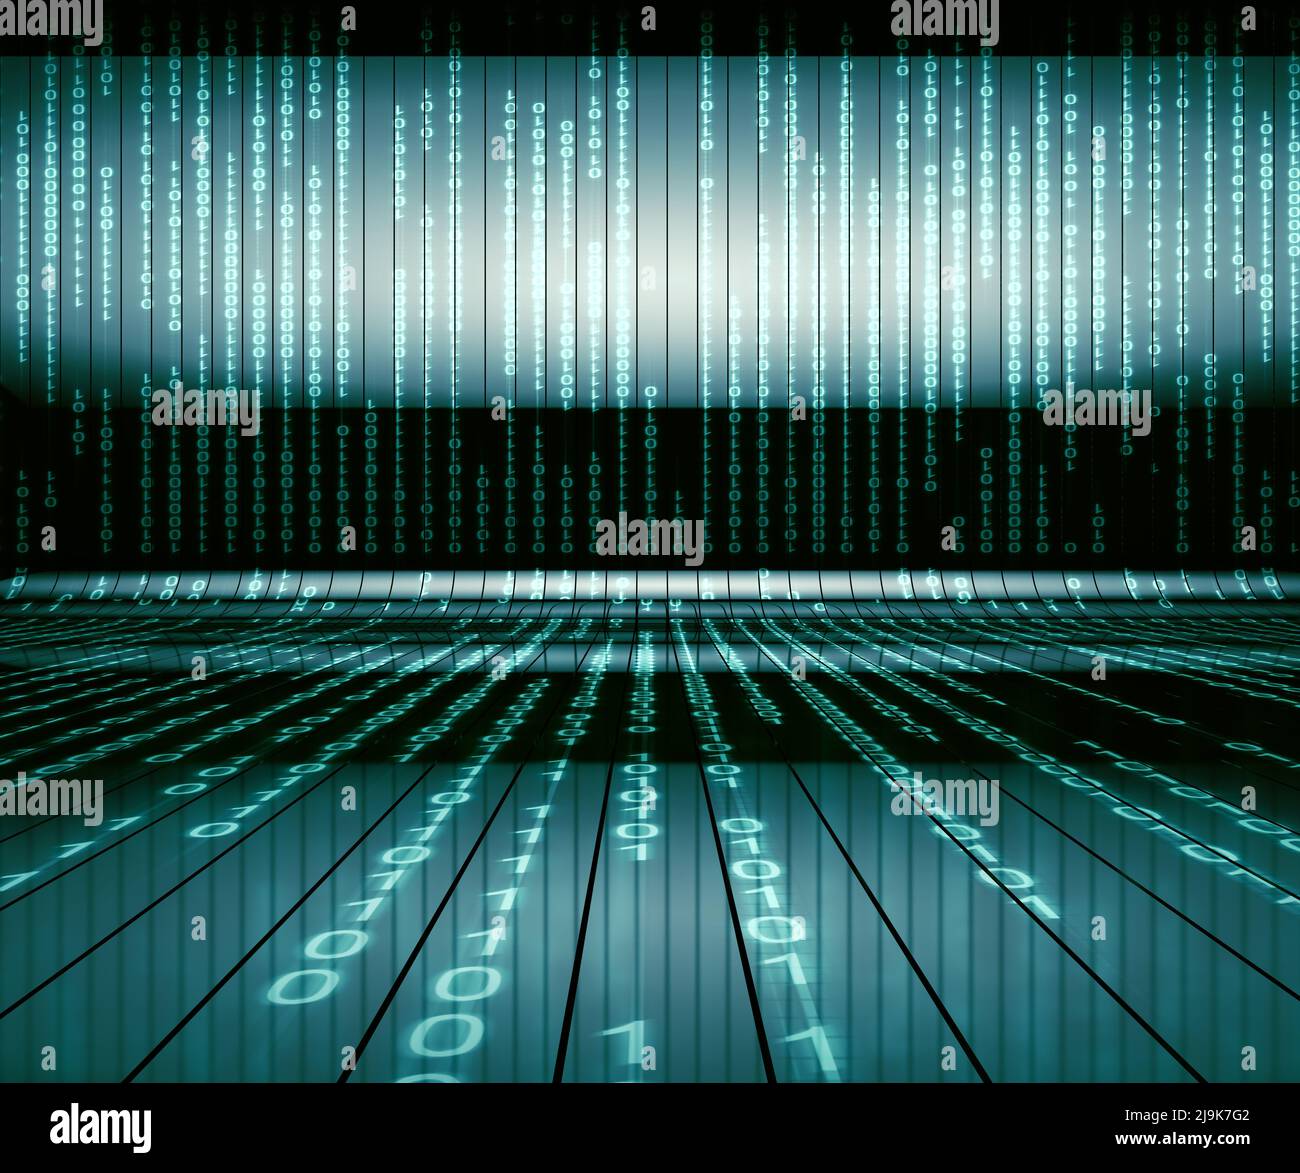 Matrix und binäre Sprache abstrakter Hintergrund.Technologie und Computer-Grafik-Konzept. Binärer Code close up Design.3D Rendering. Stockfoto